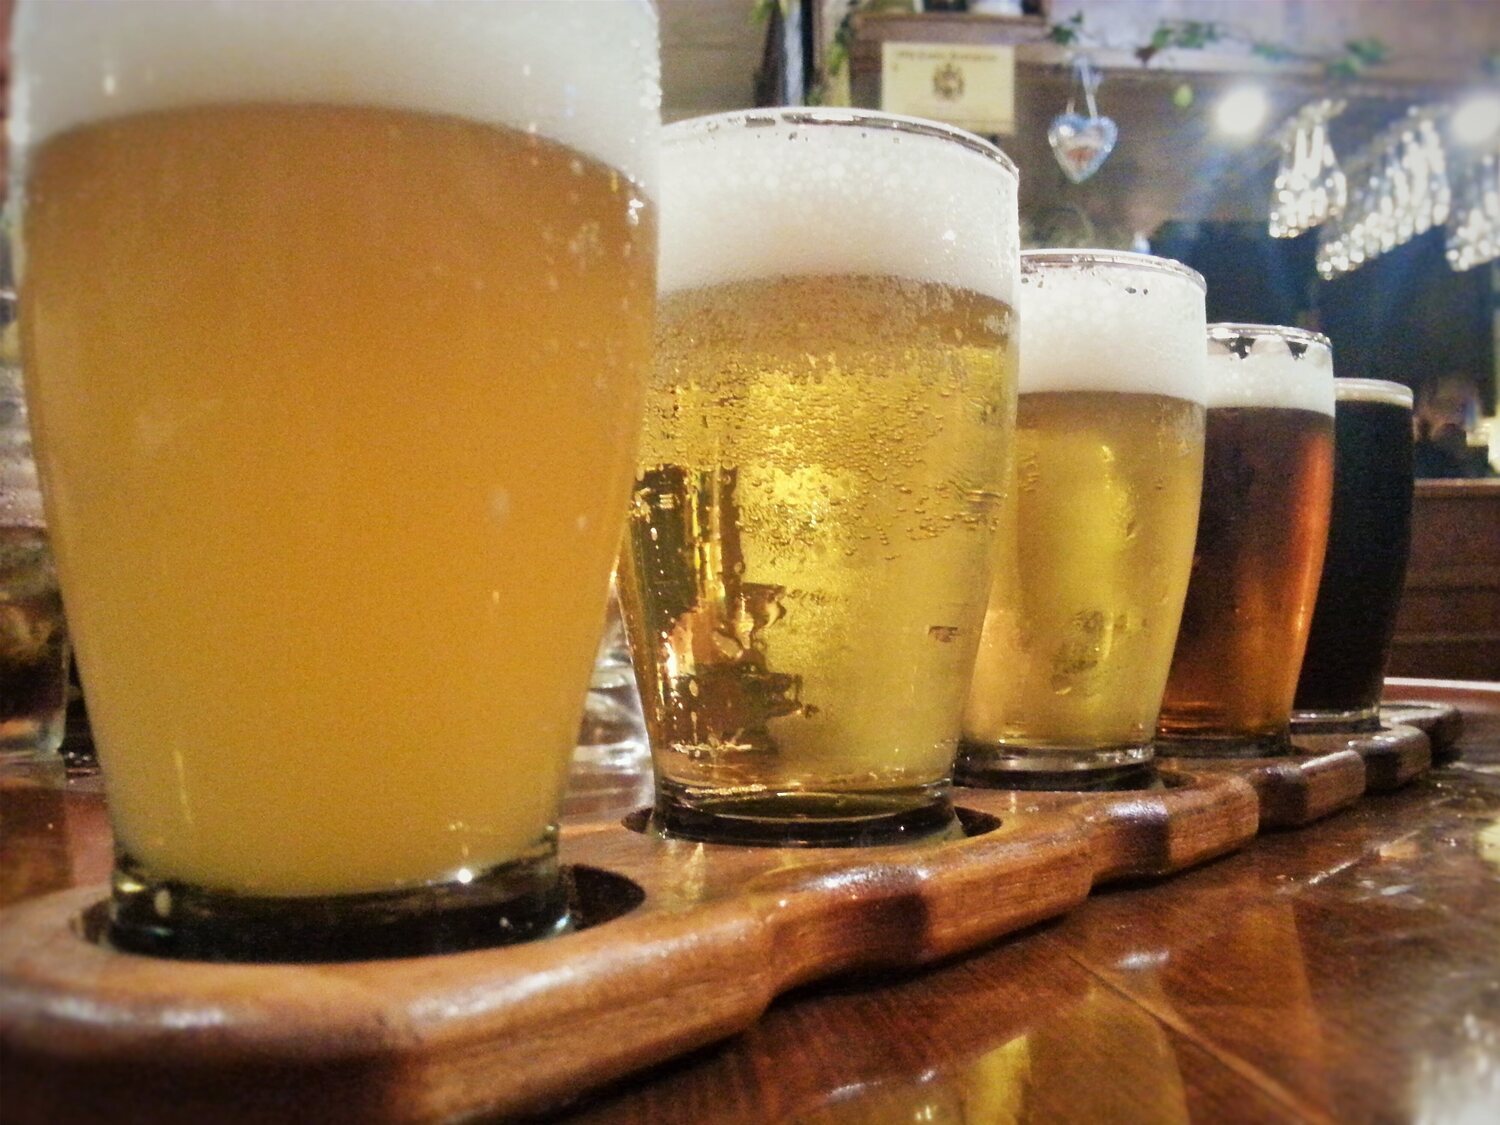 El desayuno de unos alemanes en un bar de Mallorca: 600 cervezas a las 10:30 de la mañana un martes